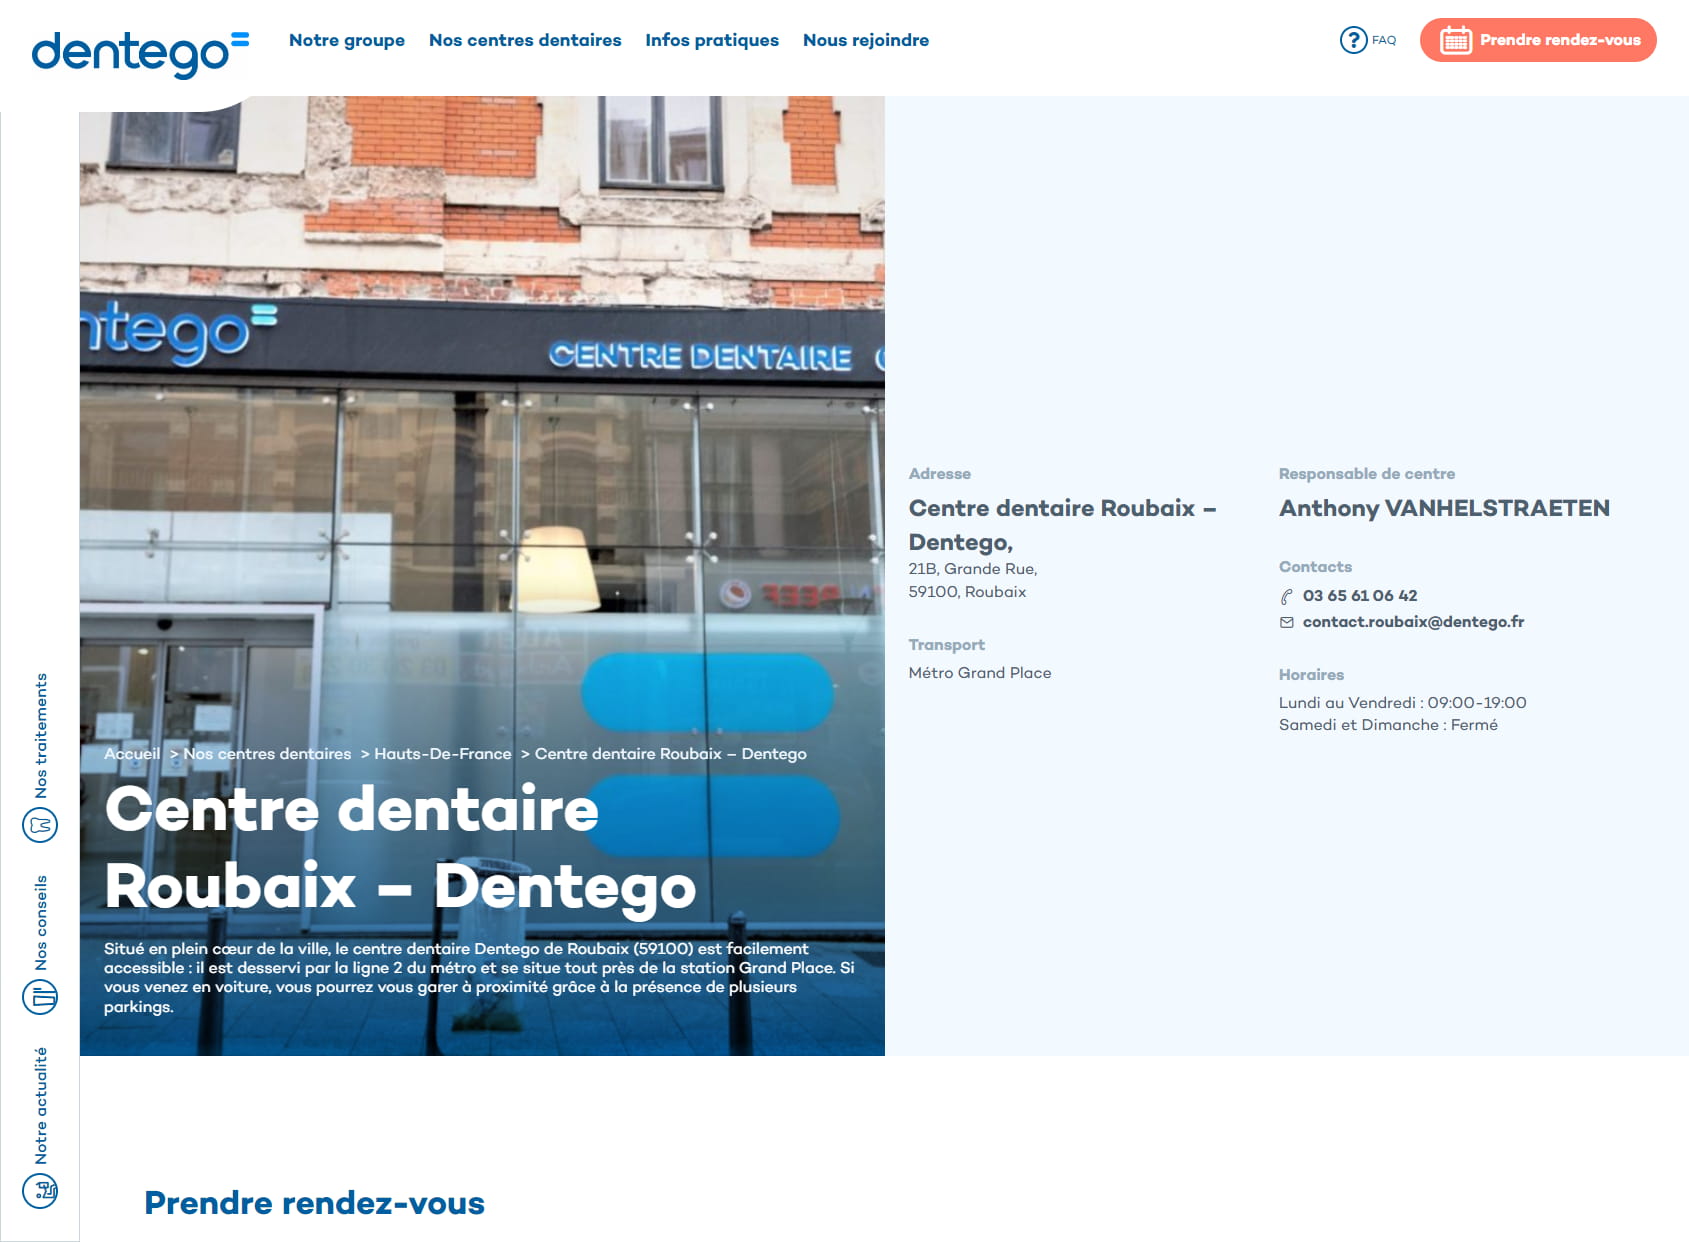 Centre Dentaire Roubaix : Dentiste et Cabinet d'orthodontie Roubaix - Dentego